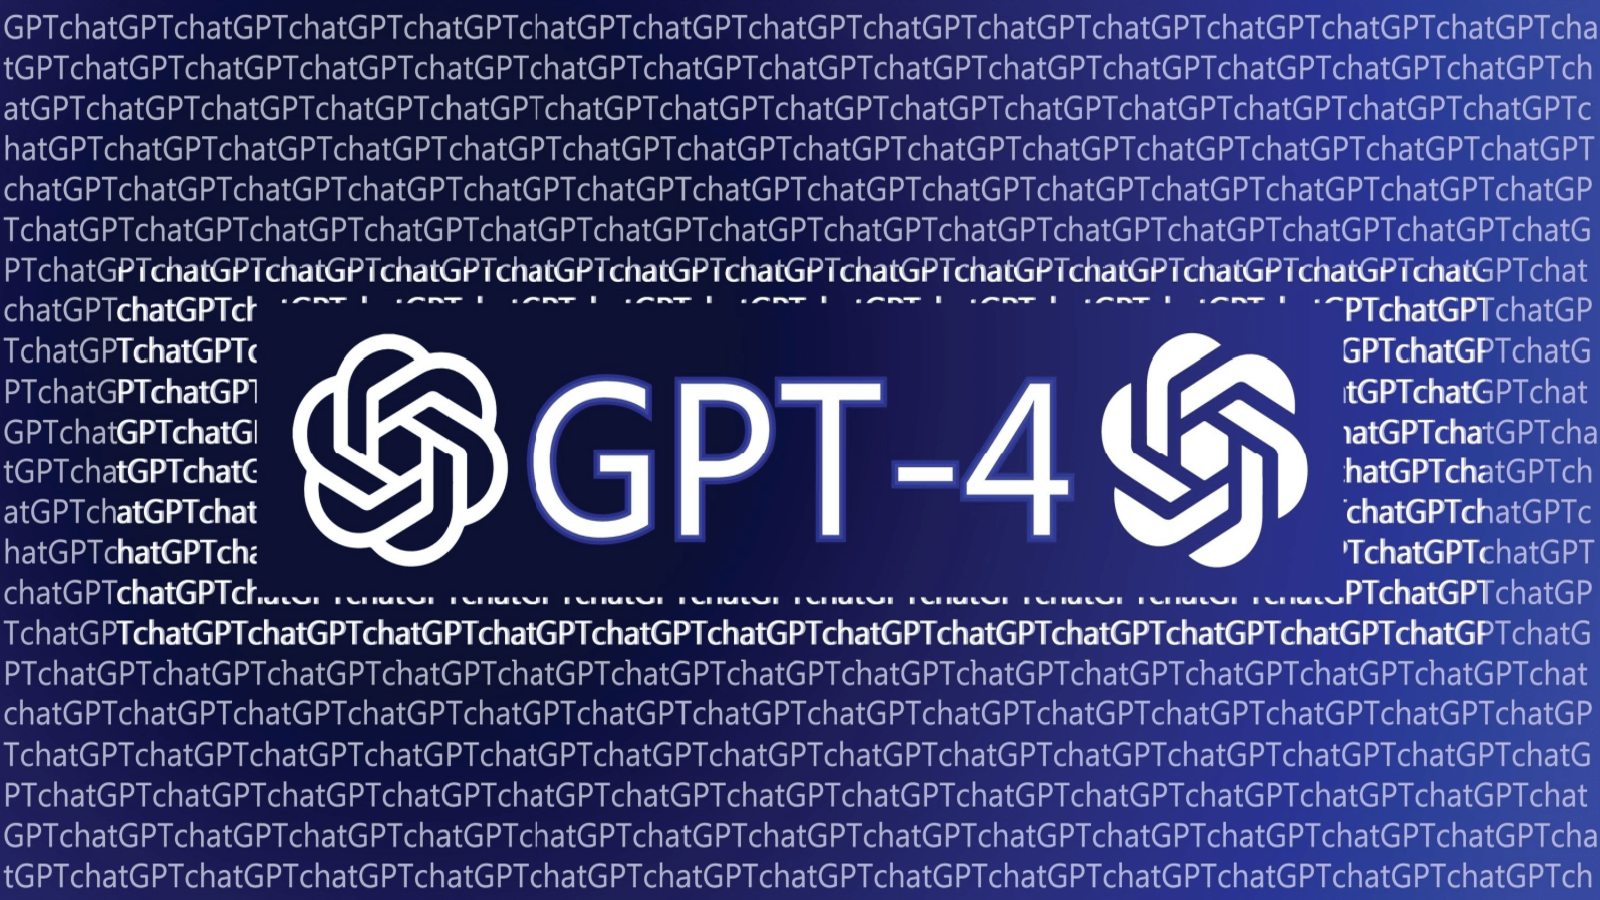 GPT-4 Turbo Entegrasyonu ile Copilot Daha Hızlı Kod Üretiyor ve Hata Ayıklamada Daha Başarılı